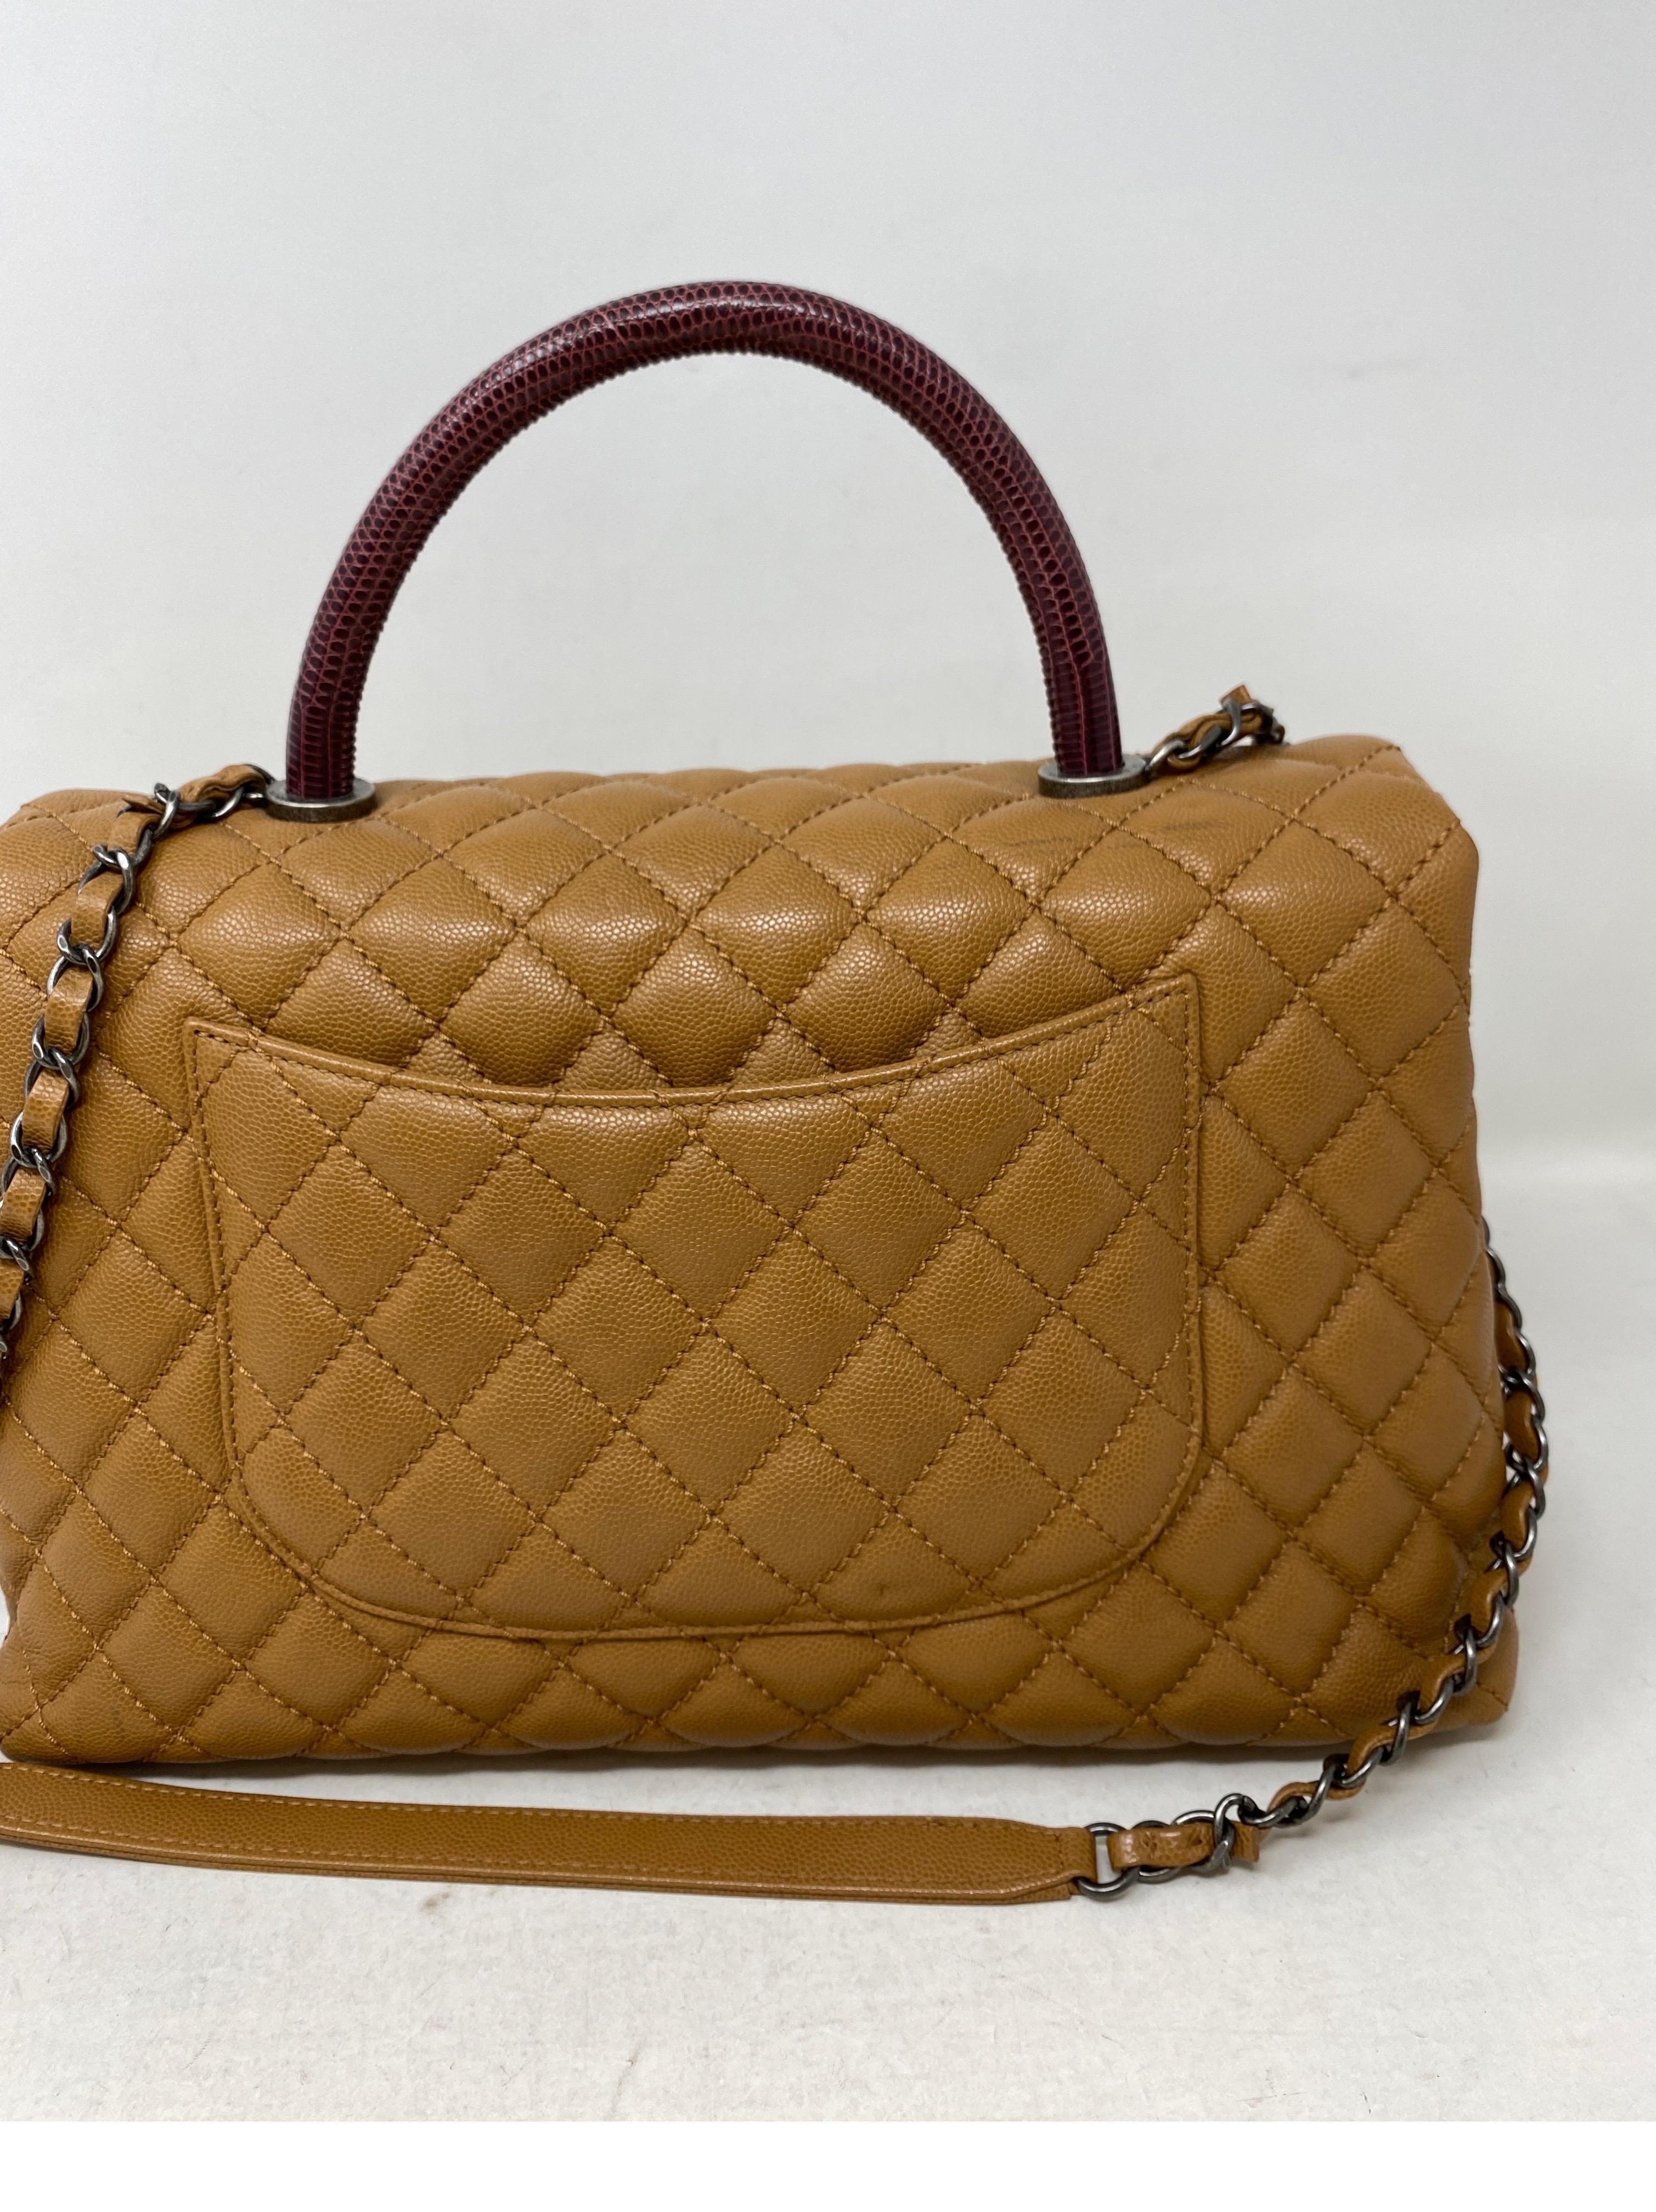 Women's or Men's Chanel Coco Handle Lizard Bag